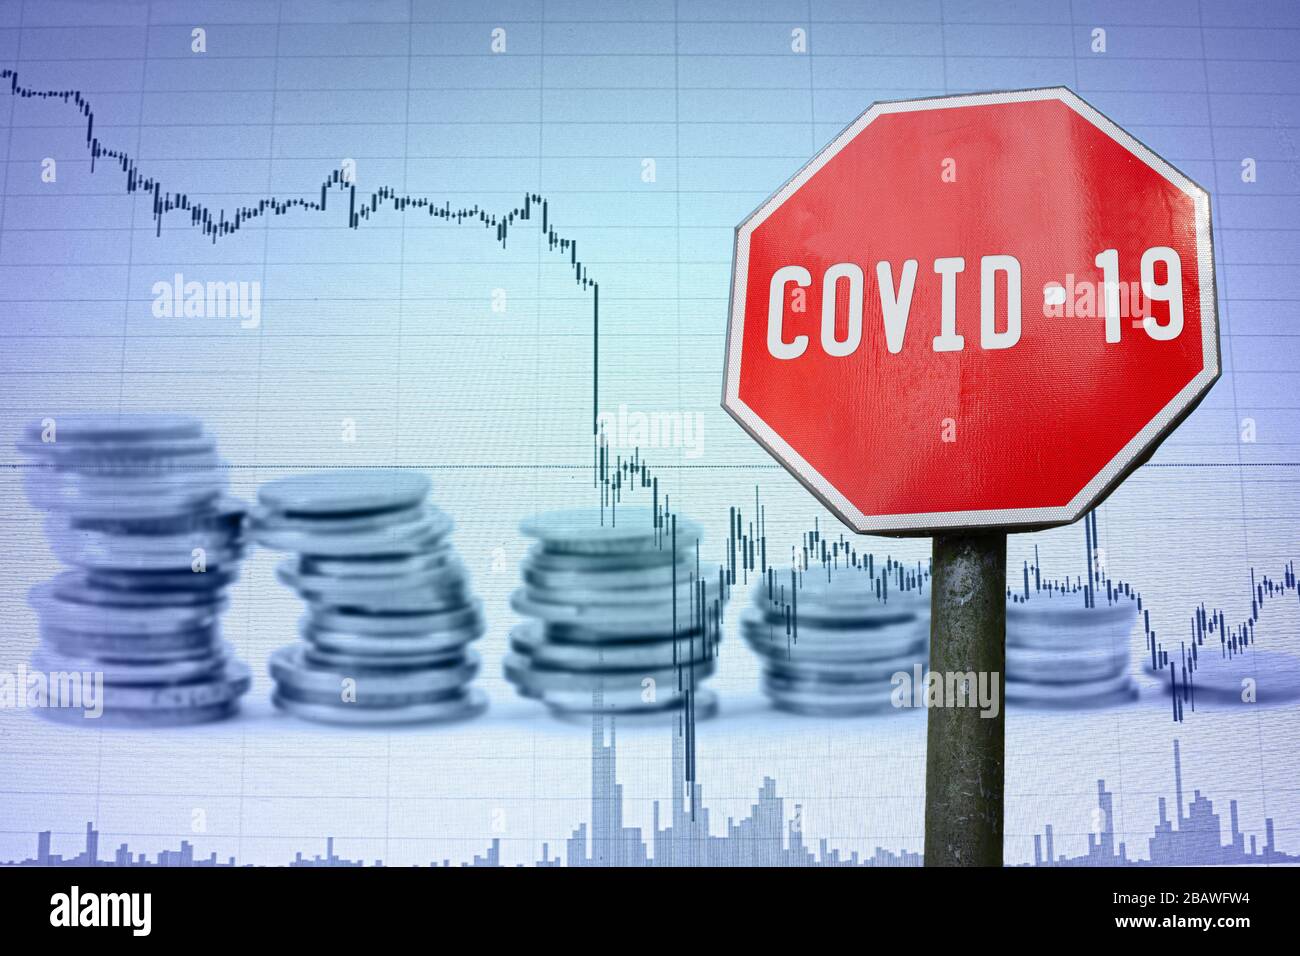 COVID-19-Zeichen auf dem wirtschaftlichen Hintergrund - Diagramm und Münzen. Finanzunfall in der Weltwirtschaft wegen Coronavirus. Weltwirtschaftskrise, Rezession. Stockfoto